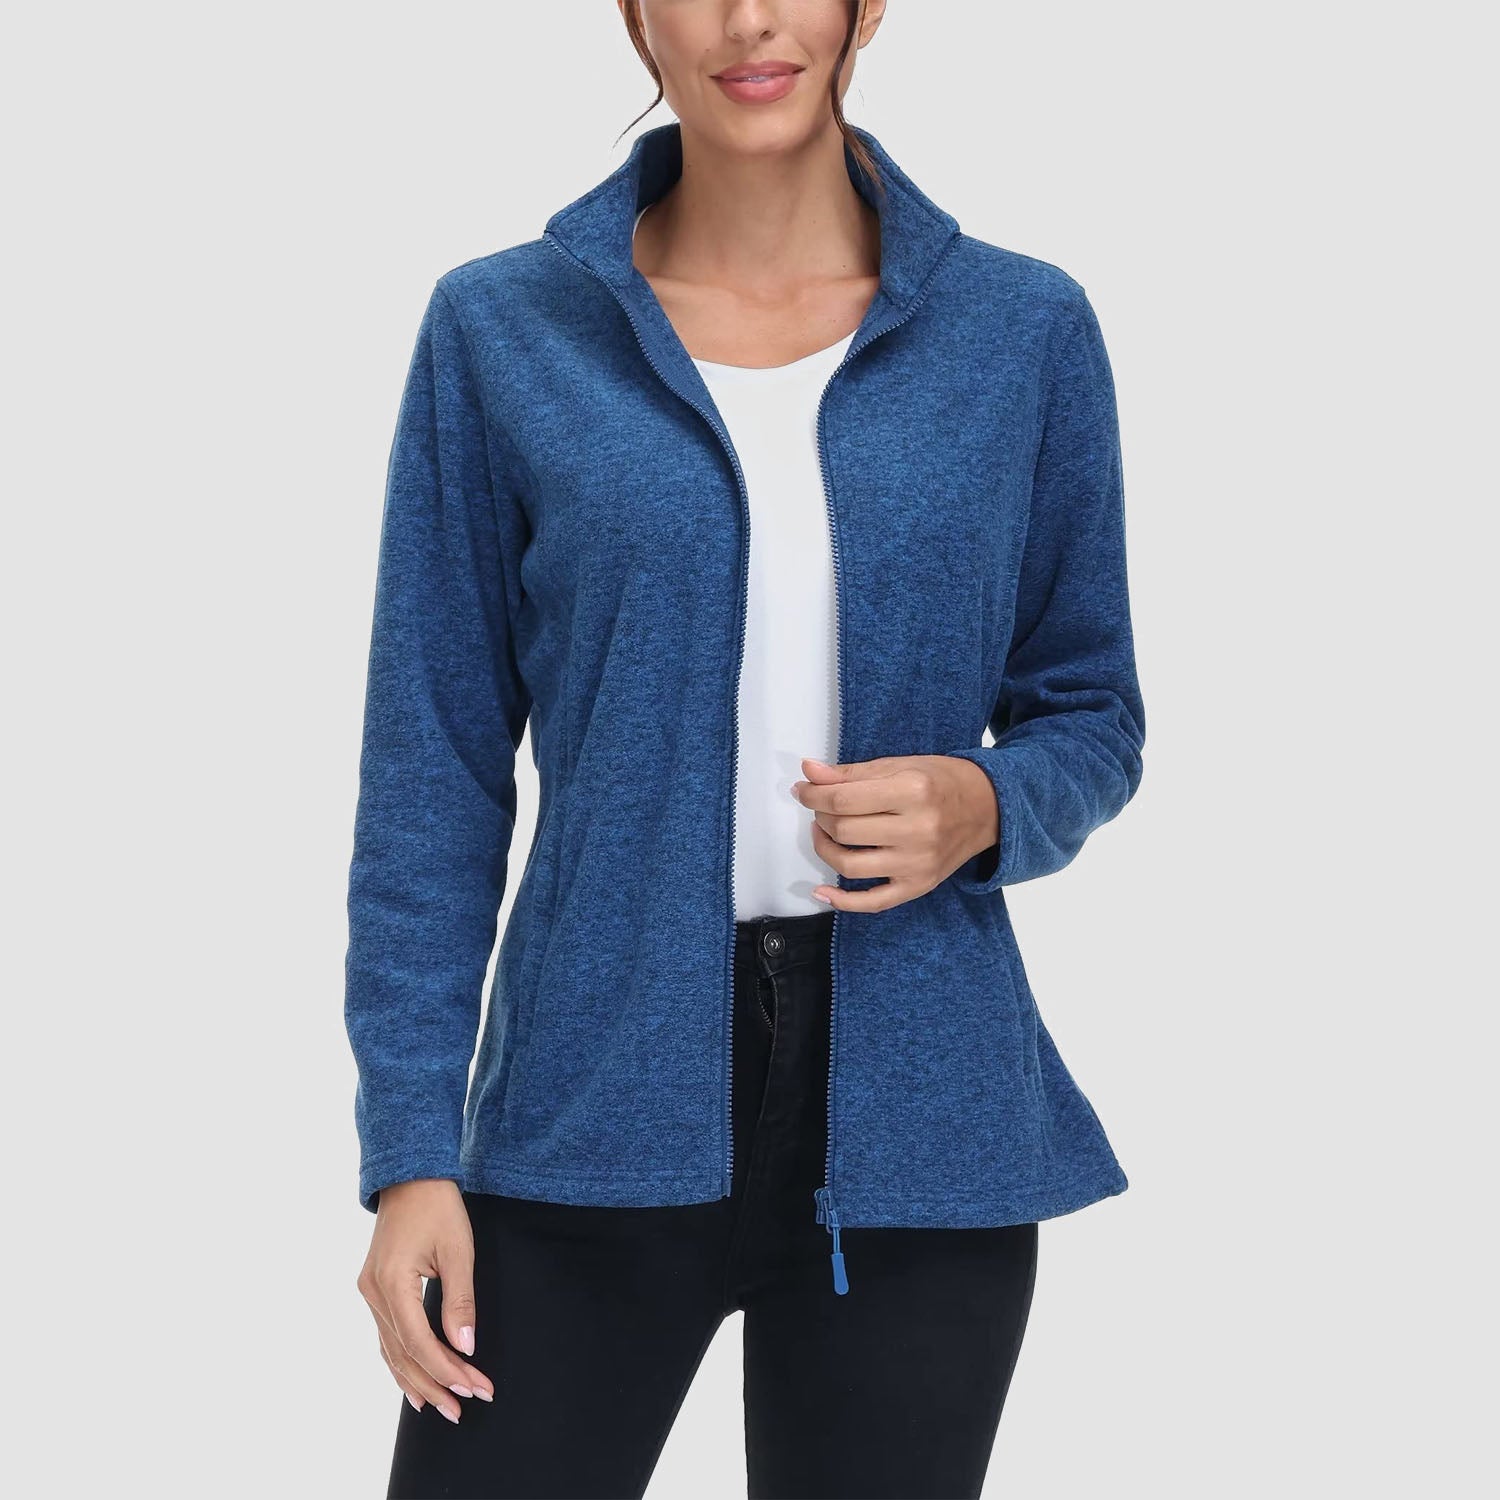 Women's Fleece Jacket Sweater Full Zip Up Coat With Zipper Pockets Warm